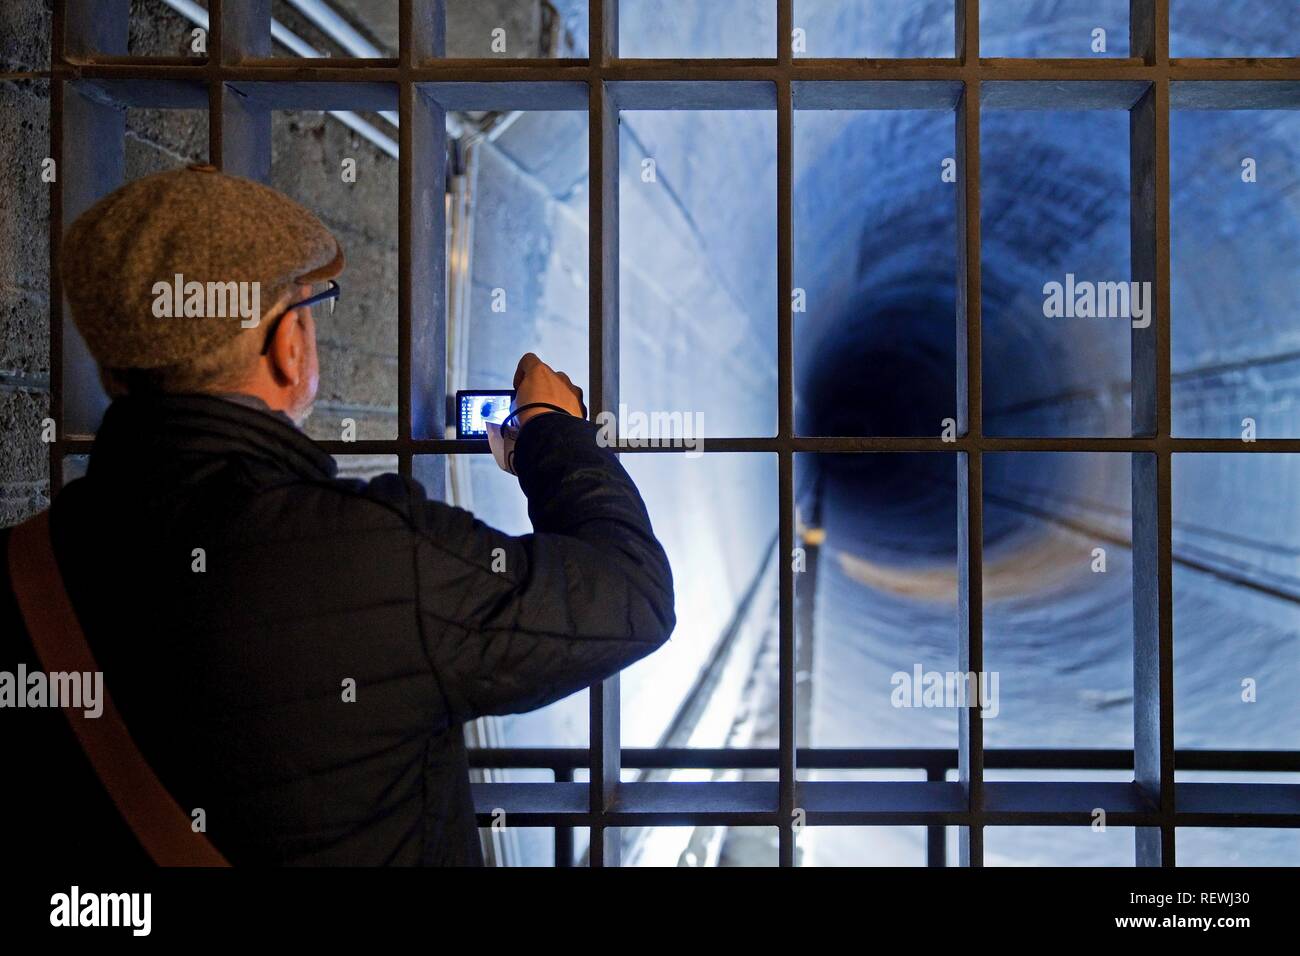 Ein Mann in der tunnelröhre fotografiert, Dokumentation Website Regierungsbunker, Bad Neuenahr-Ahrweiler, Rheinland-Pfalz Stockfoto